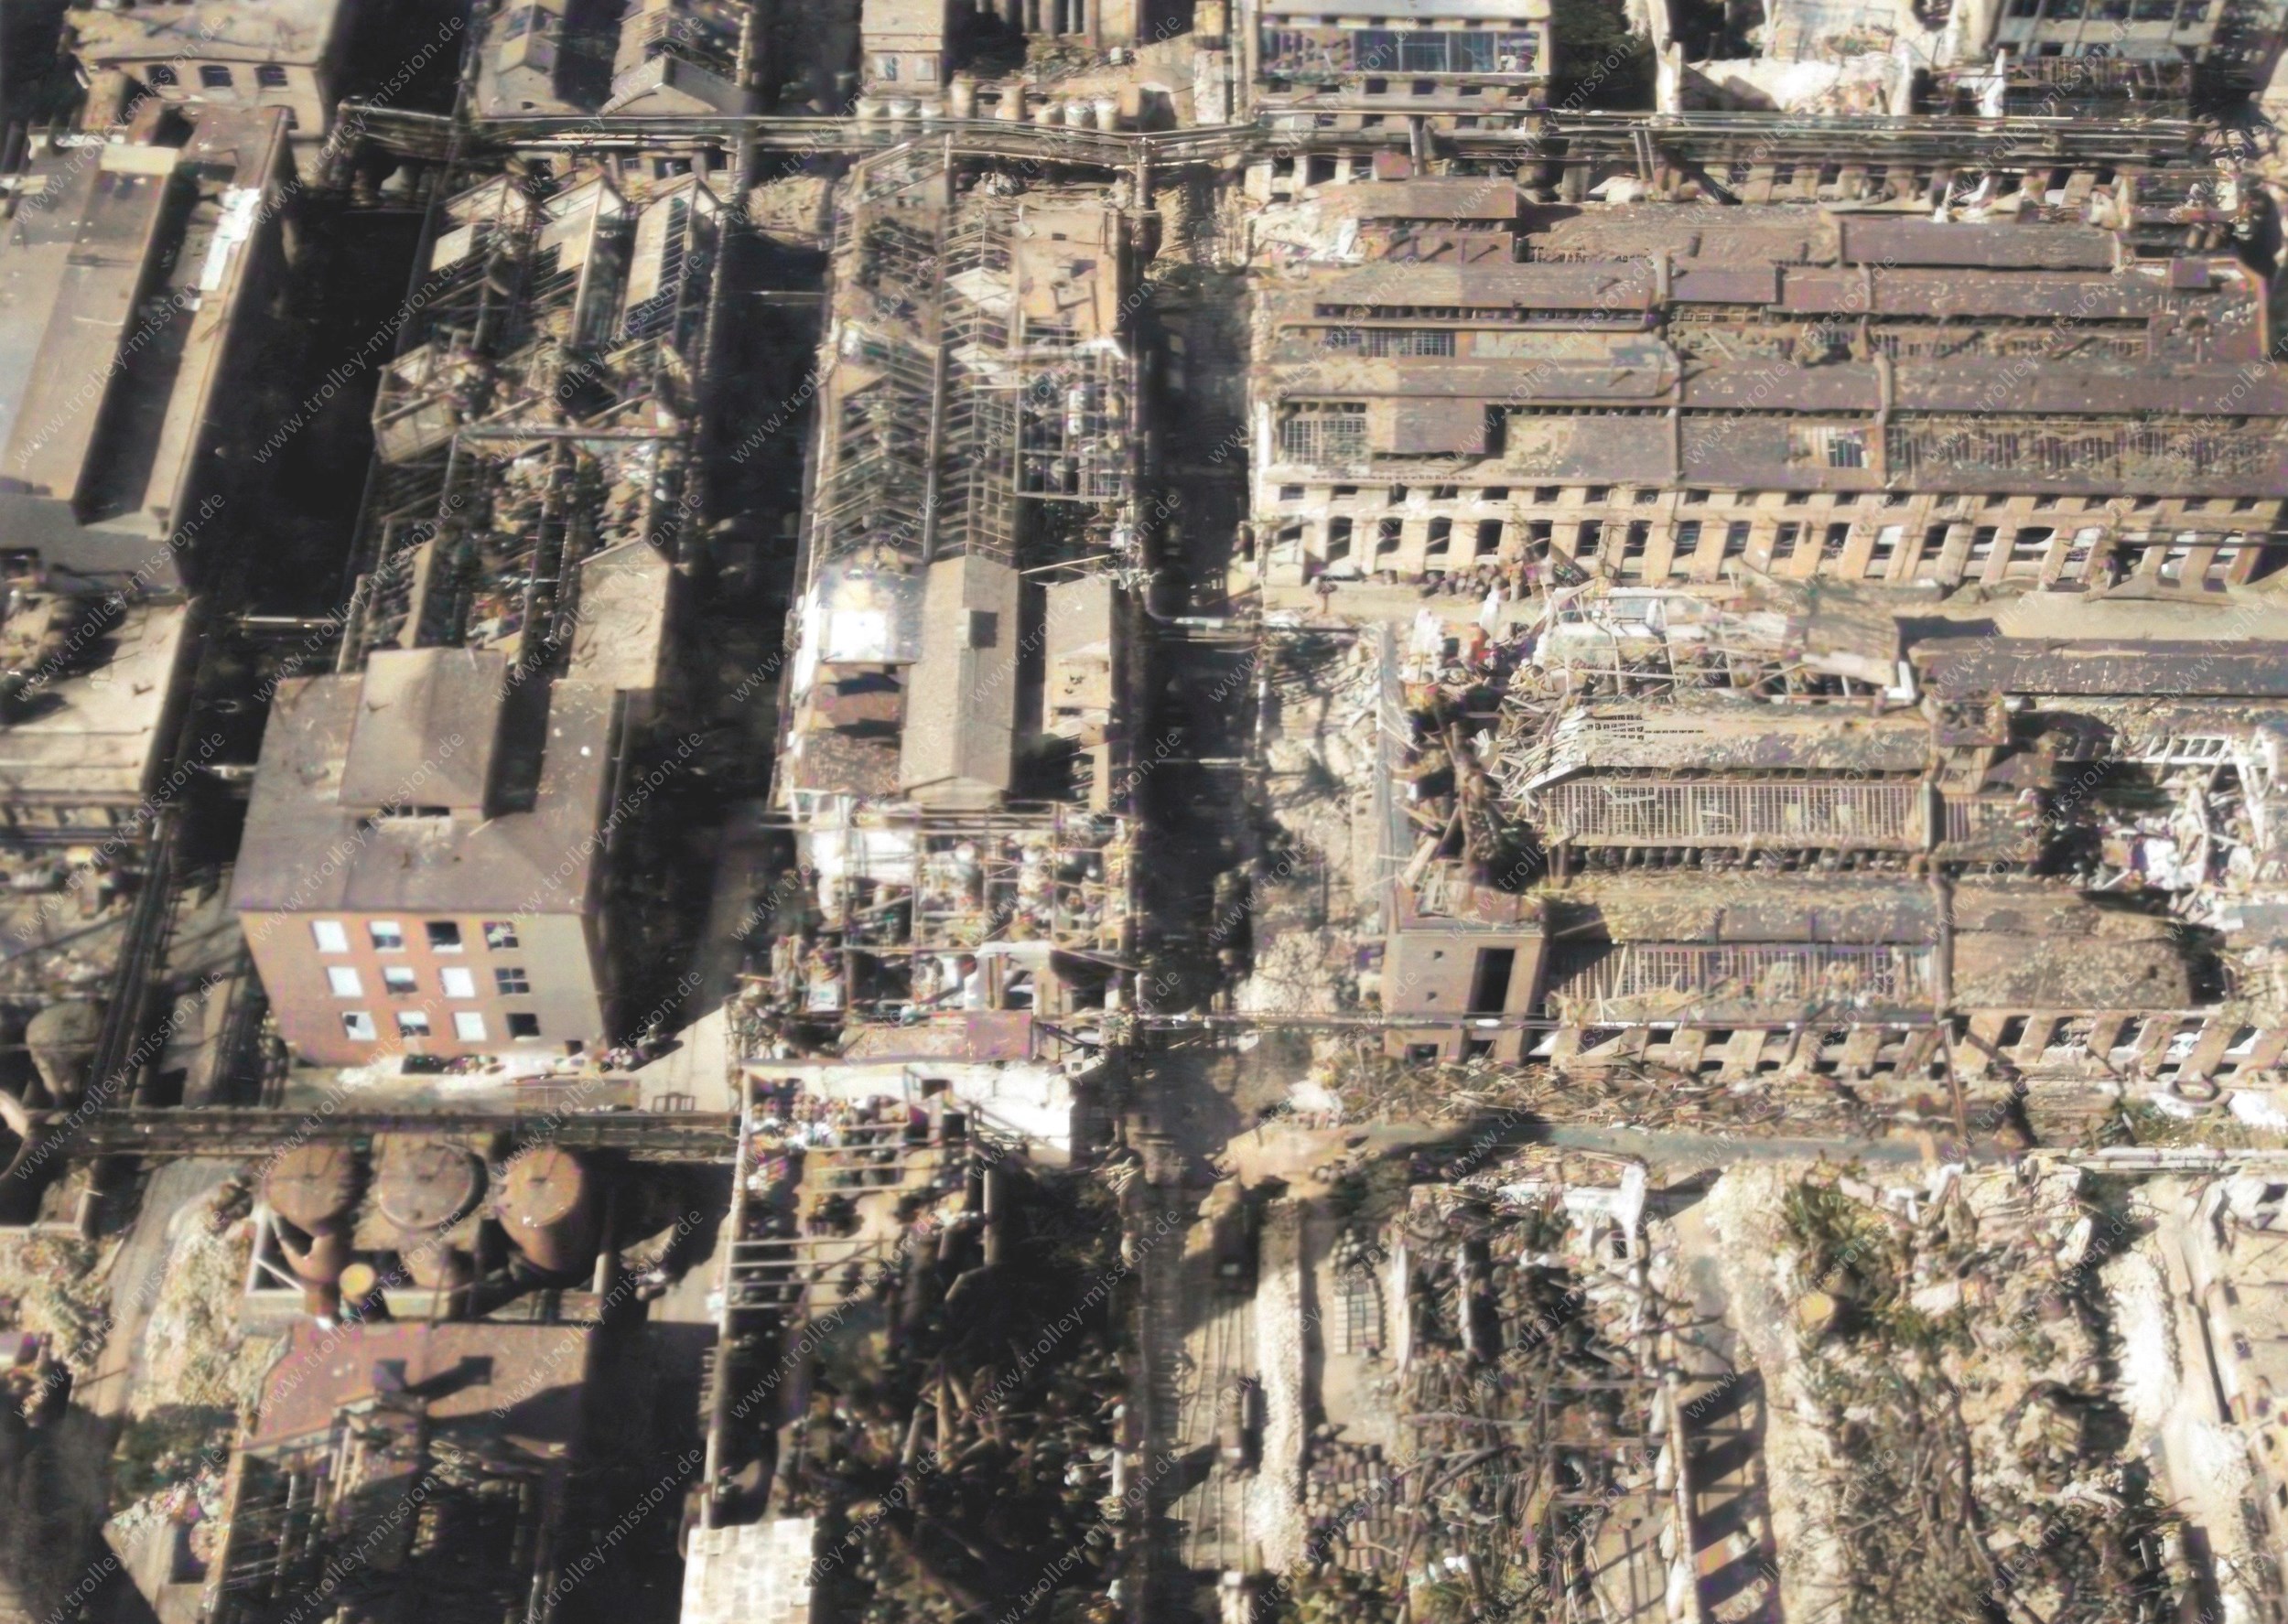 Das Luftbild zeigt das im Zweiten Weltkrieg weitgehend zerstörte Werksgelände der BASF AG bzw. der I. G. Farbenindustrie AG in Ludwigshafen am Rhein.